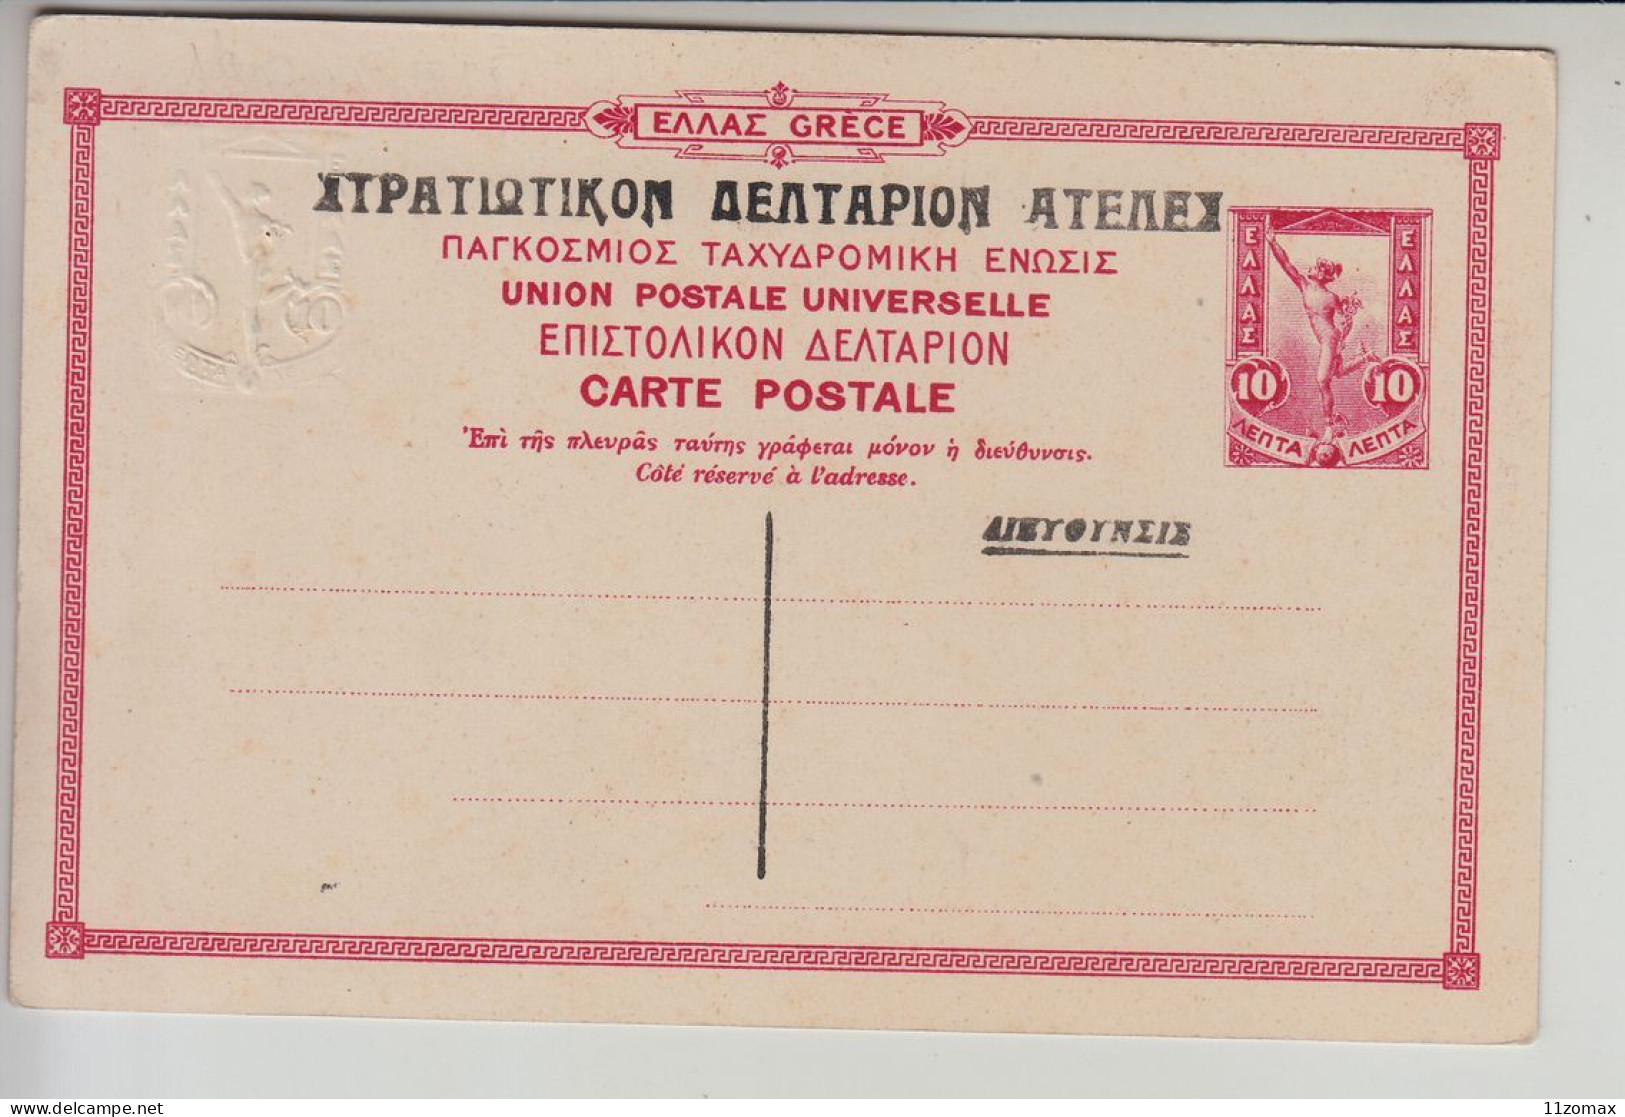 GRECE ENTIER 10A CARTE POSTALE CORFOU Vestibule De L'Achillion PC Postal Stationery NEAR MINT (Gr054) - Enteros Postales